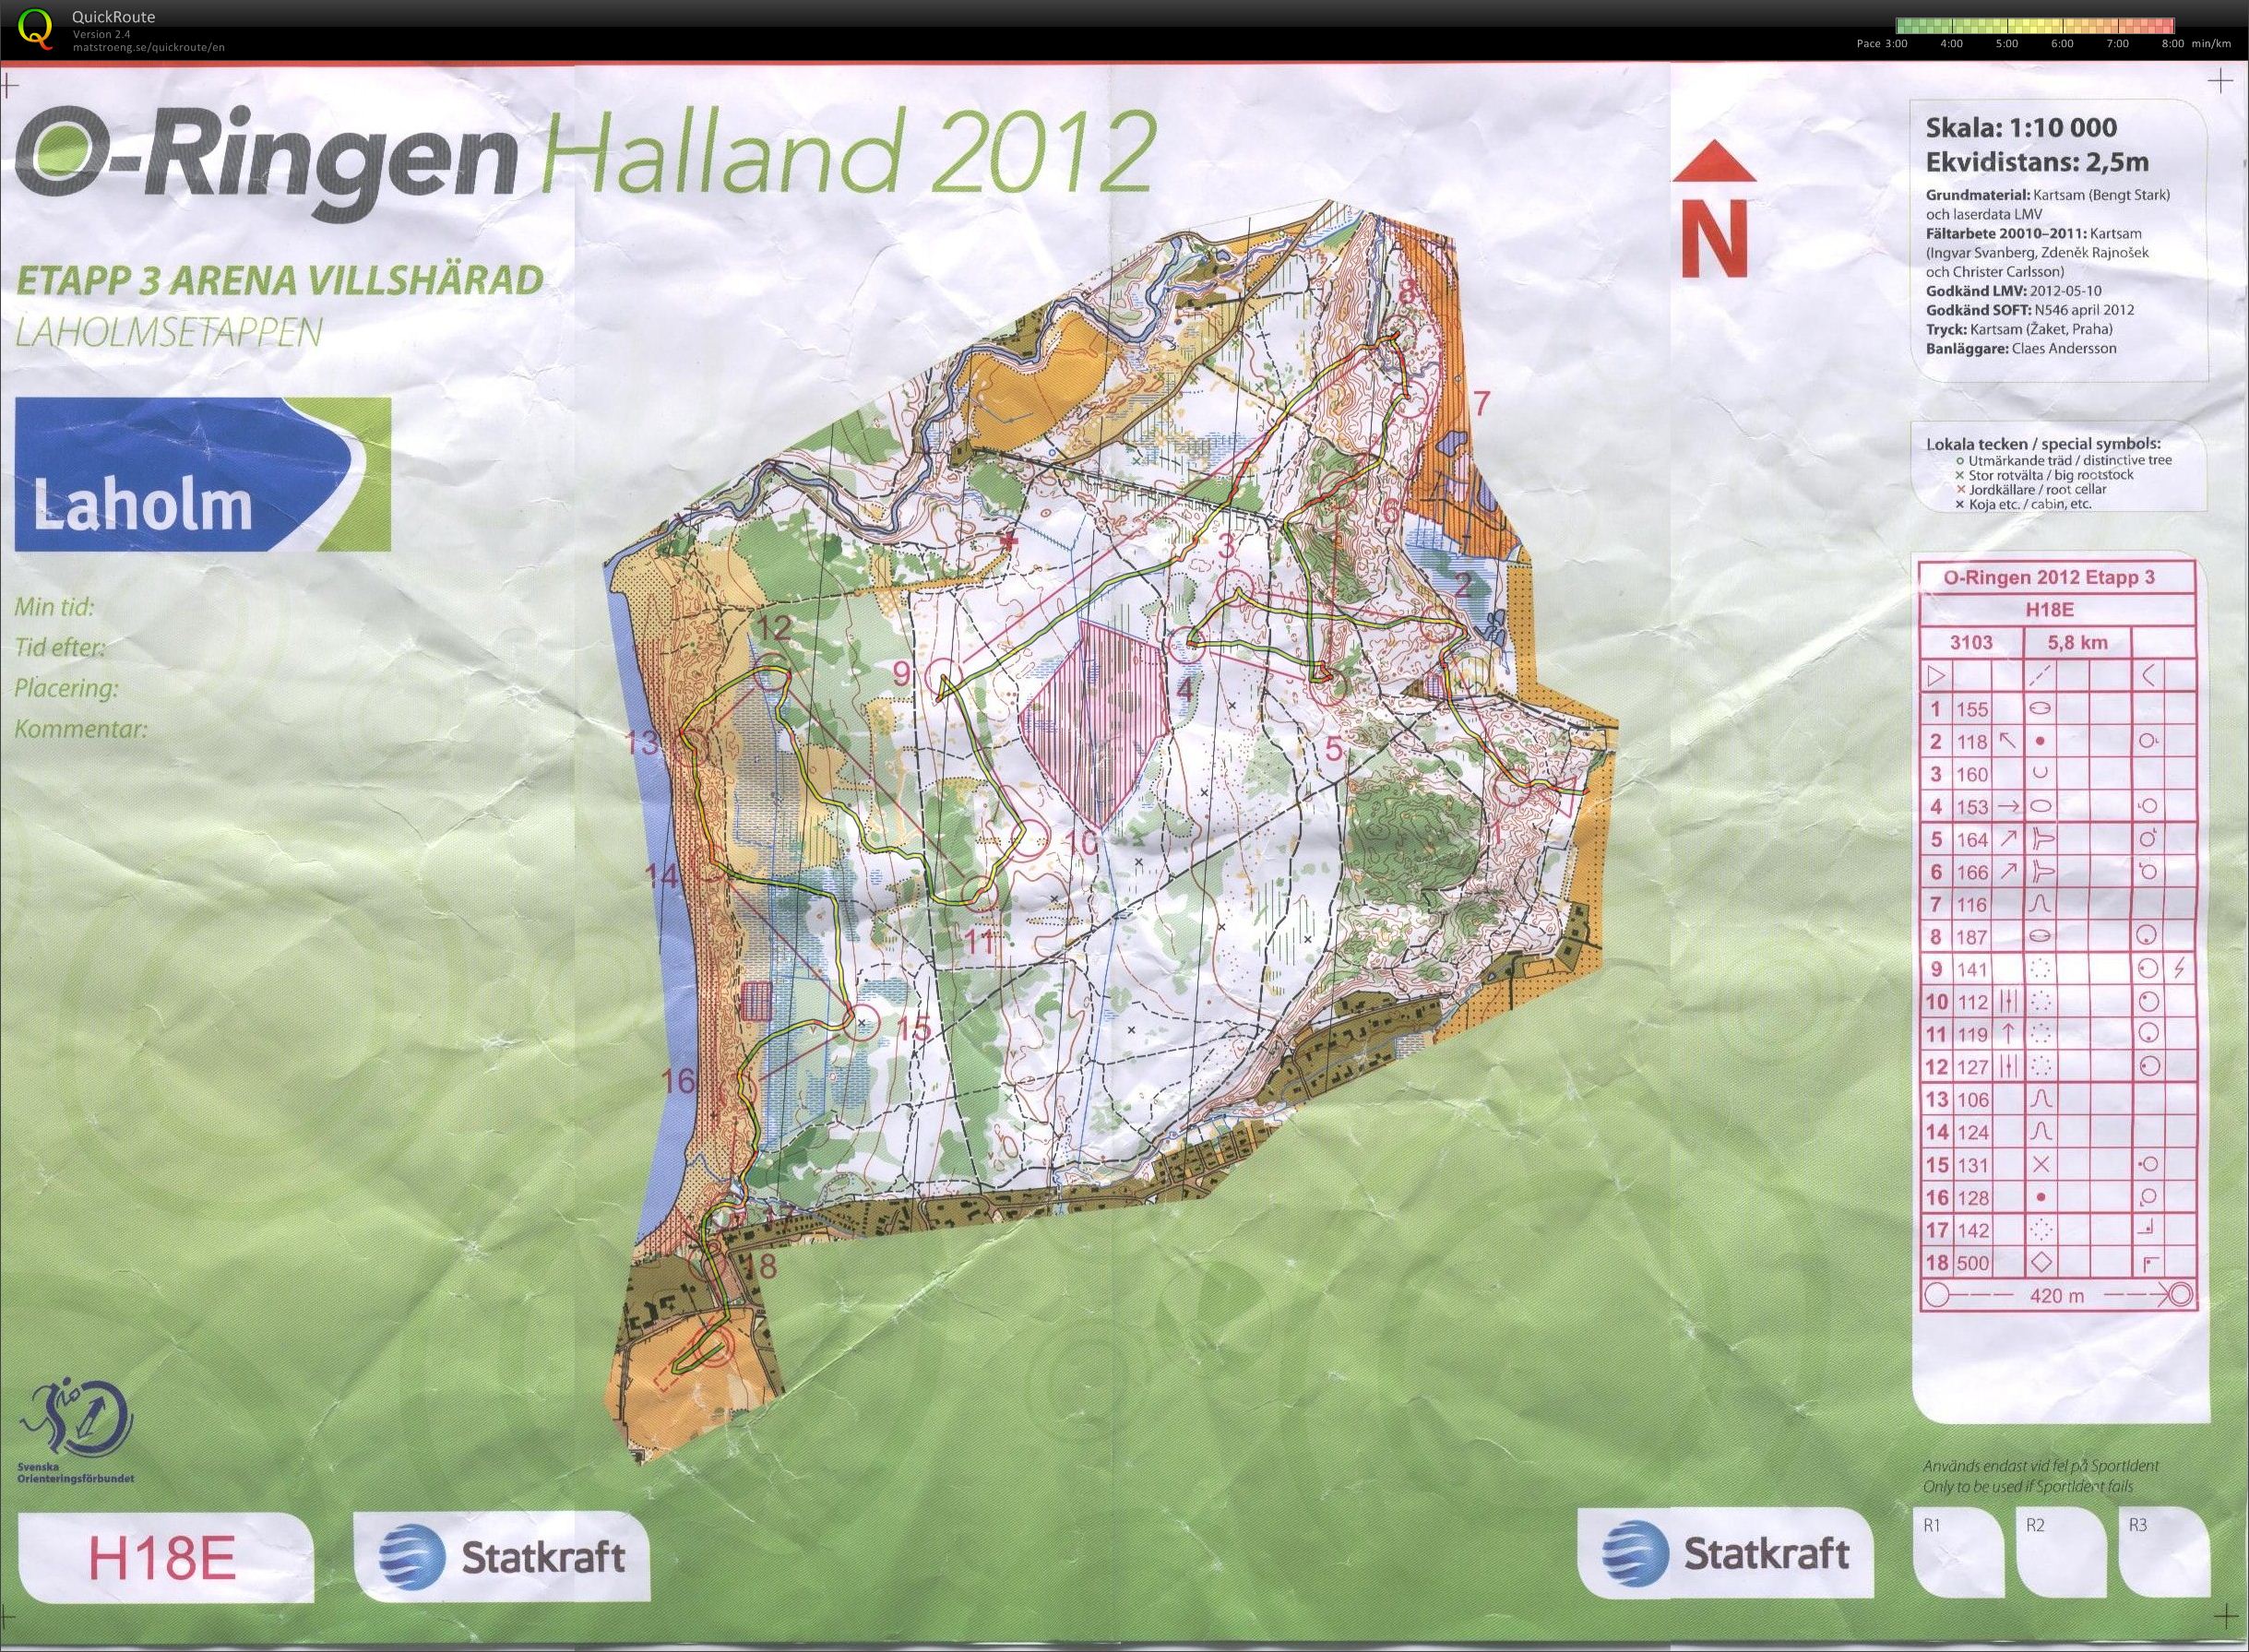 O-Ringen 2012 Etappe 3 (24.07.2012)